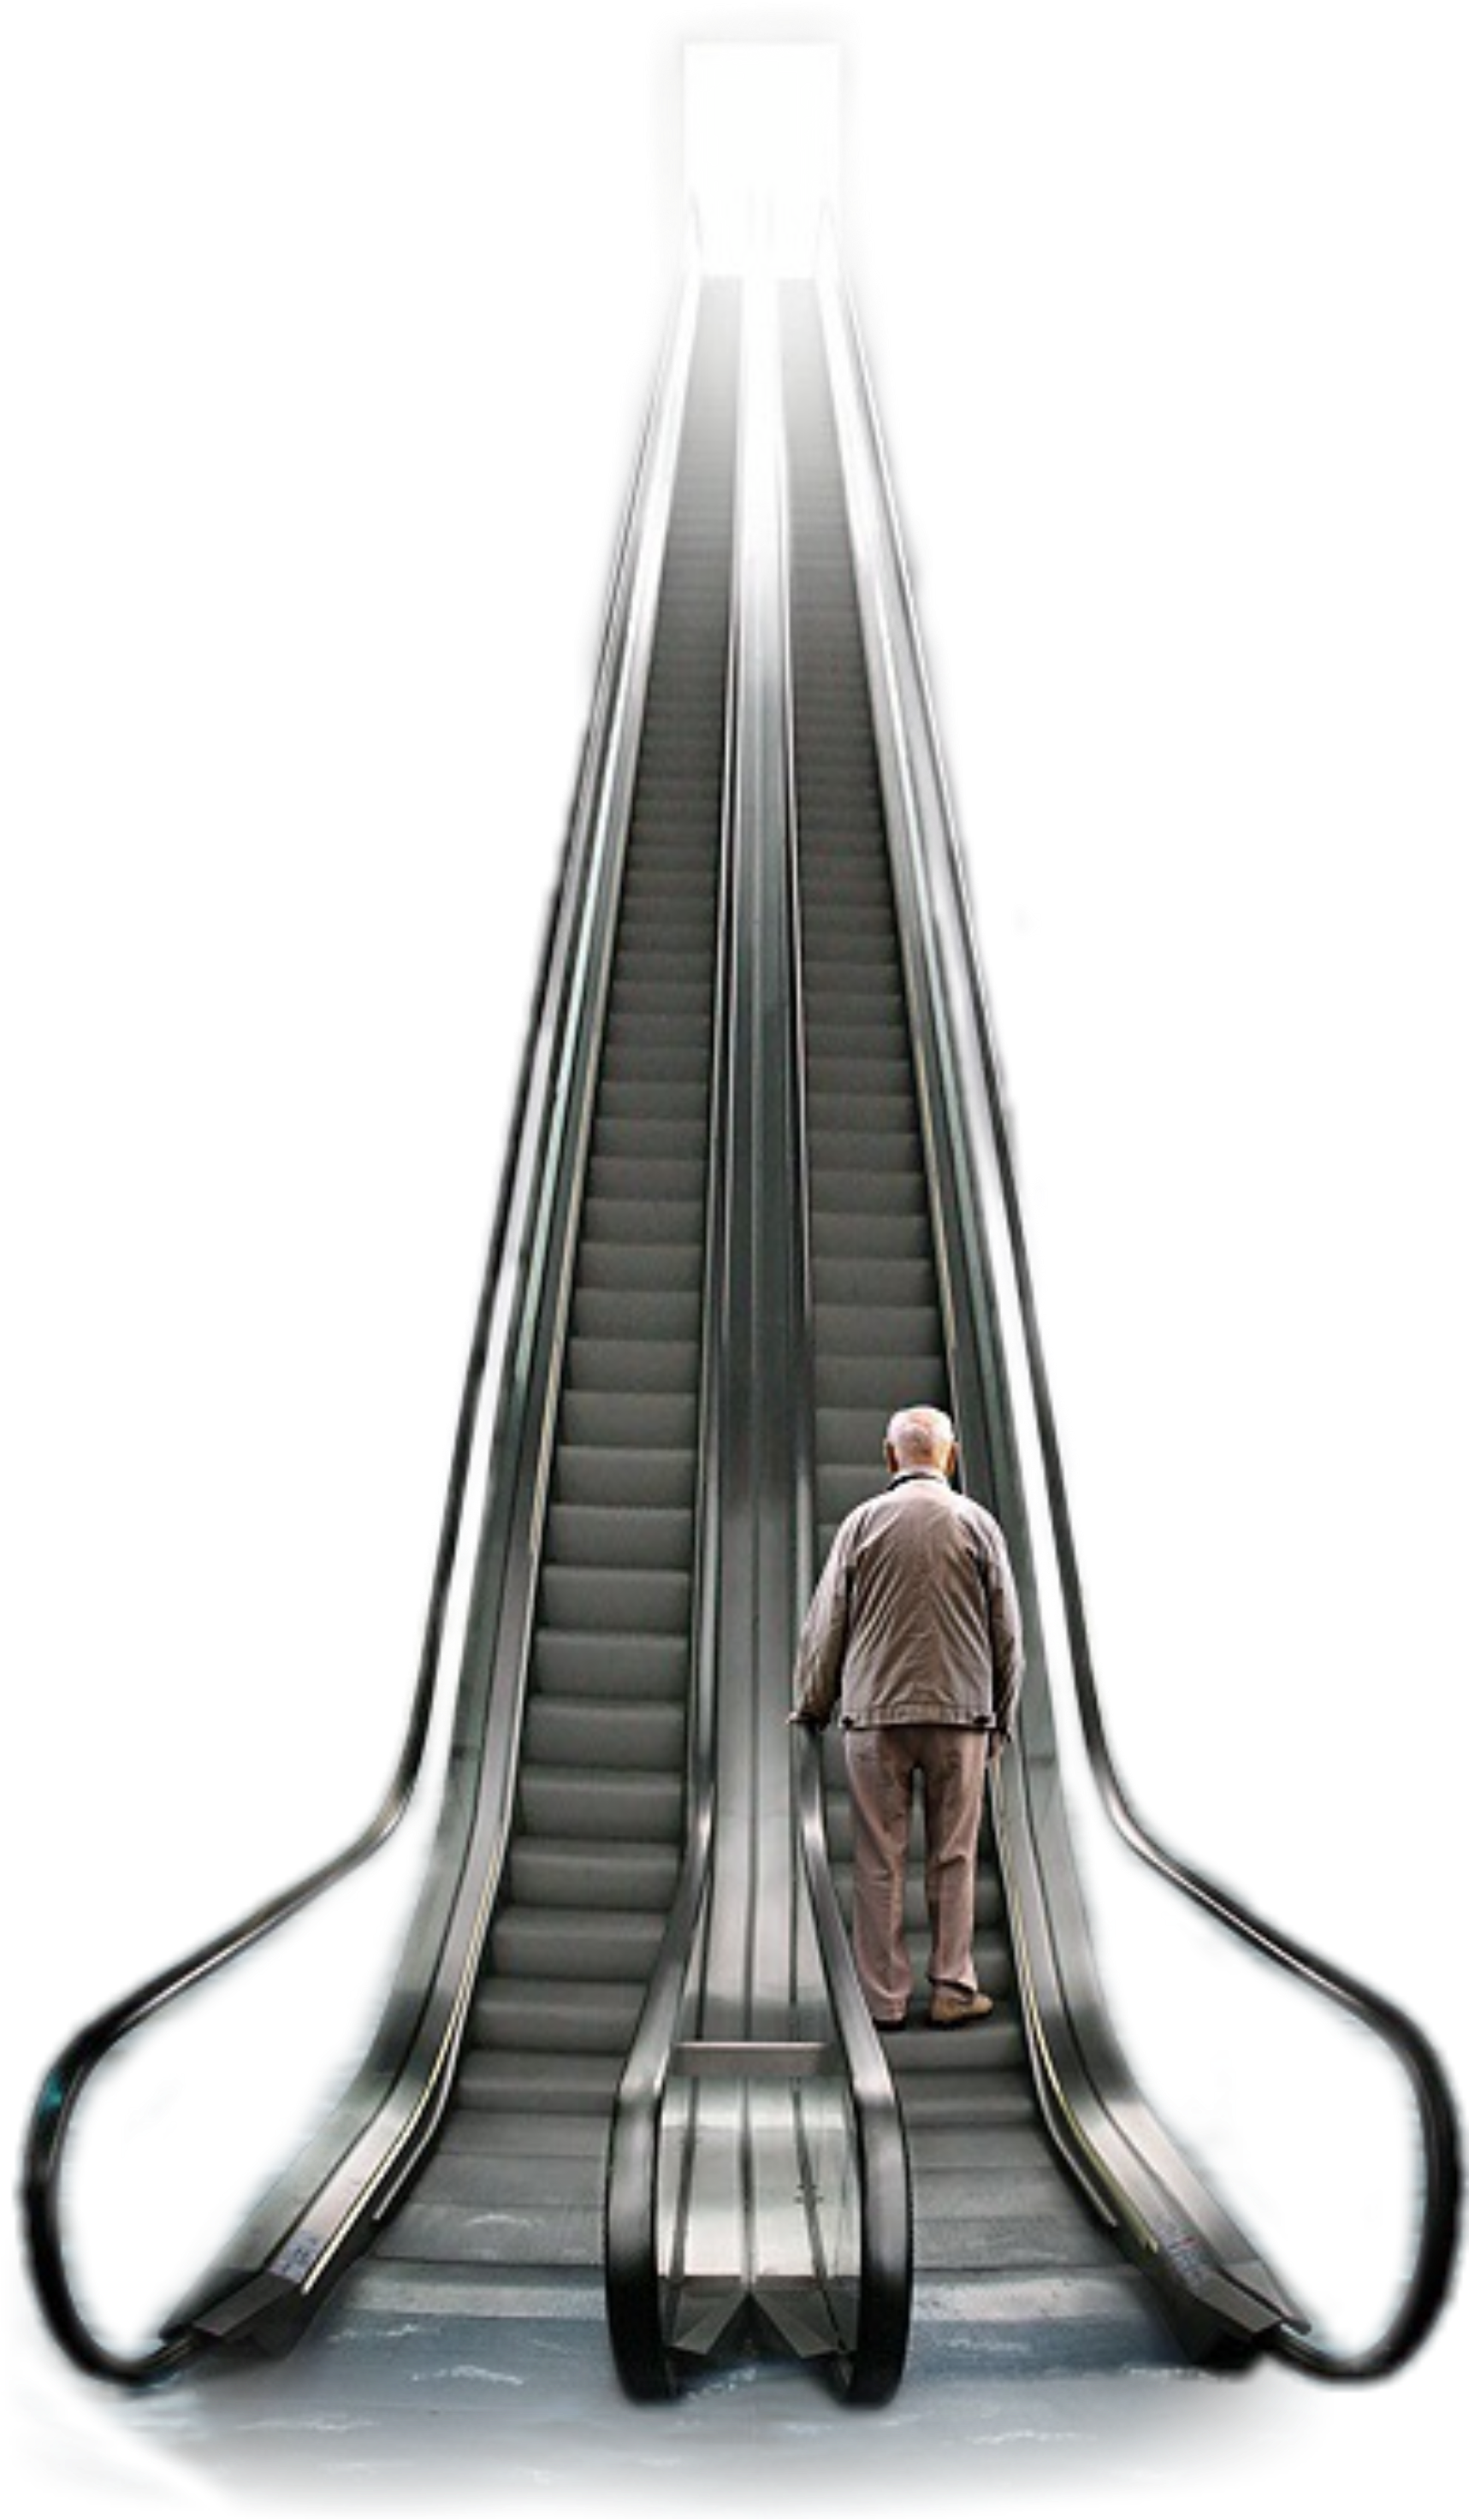 A Man Standing On An Escalator